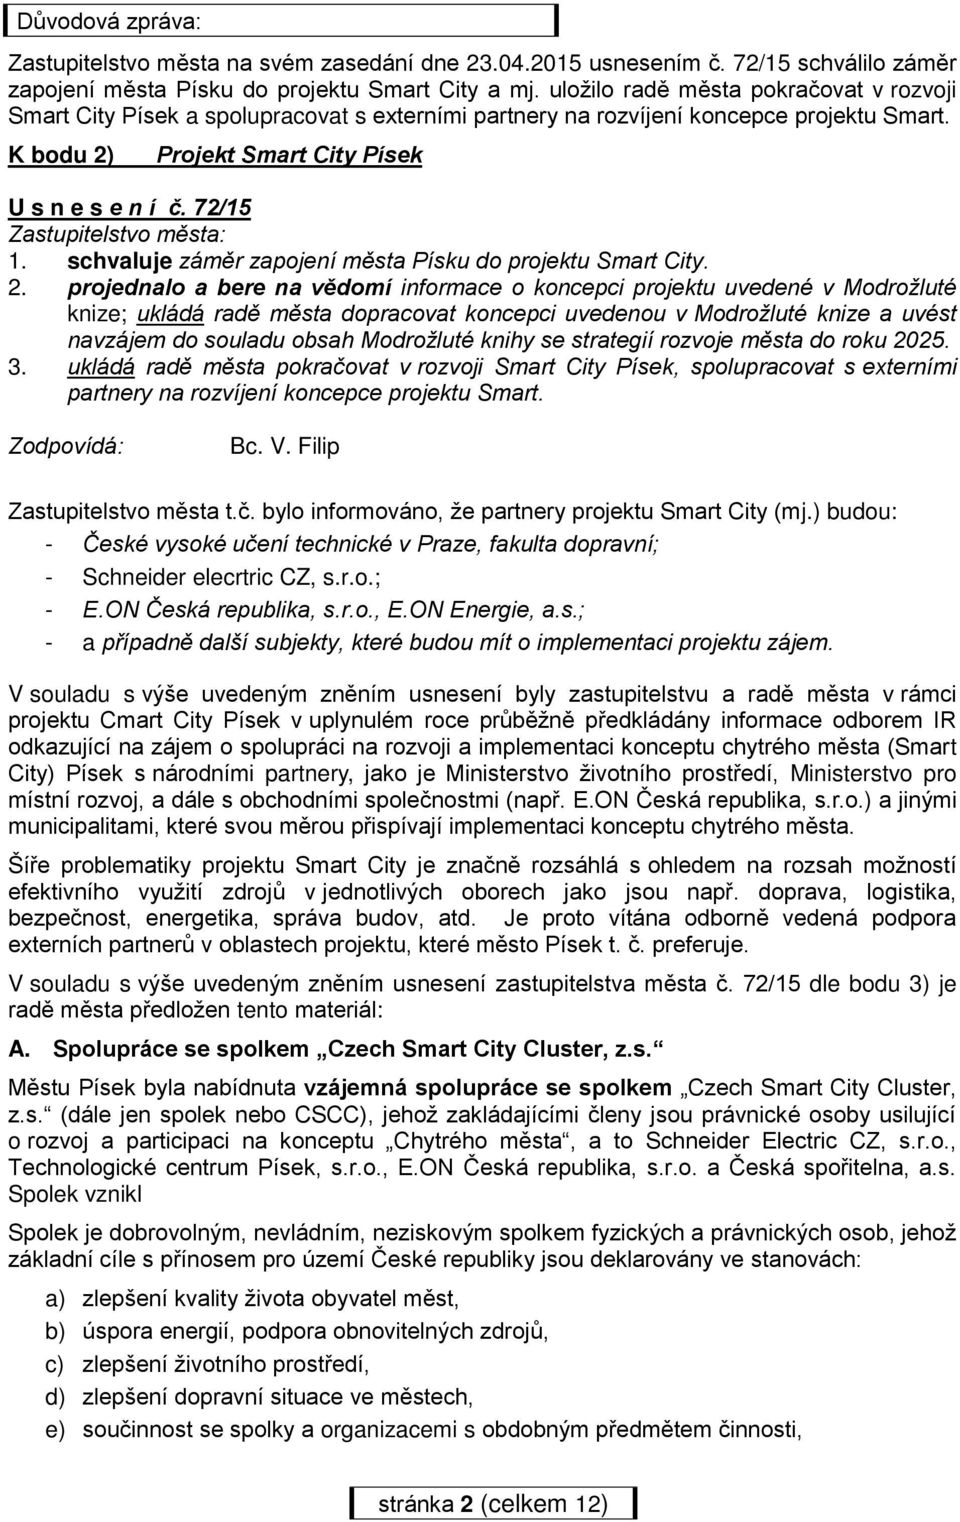 72/15 Zastupitelstvo města: 1. schvaluje záměr zapojení města Písku do projektu Smart City. 2.